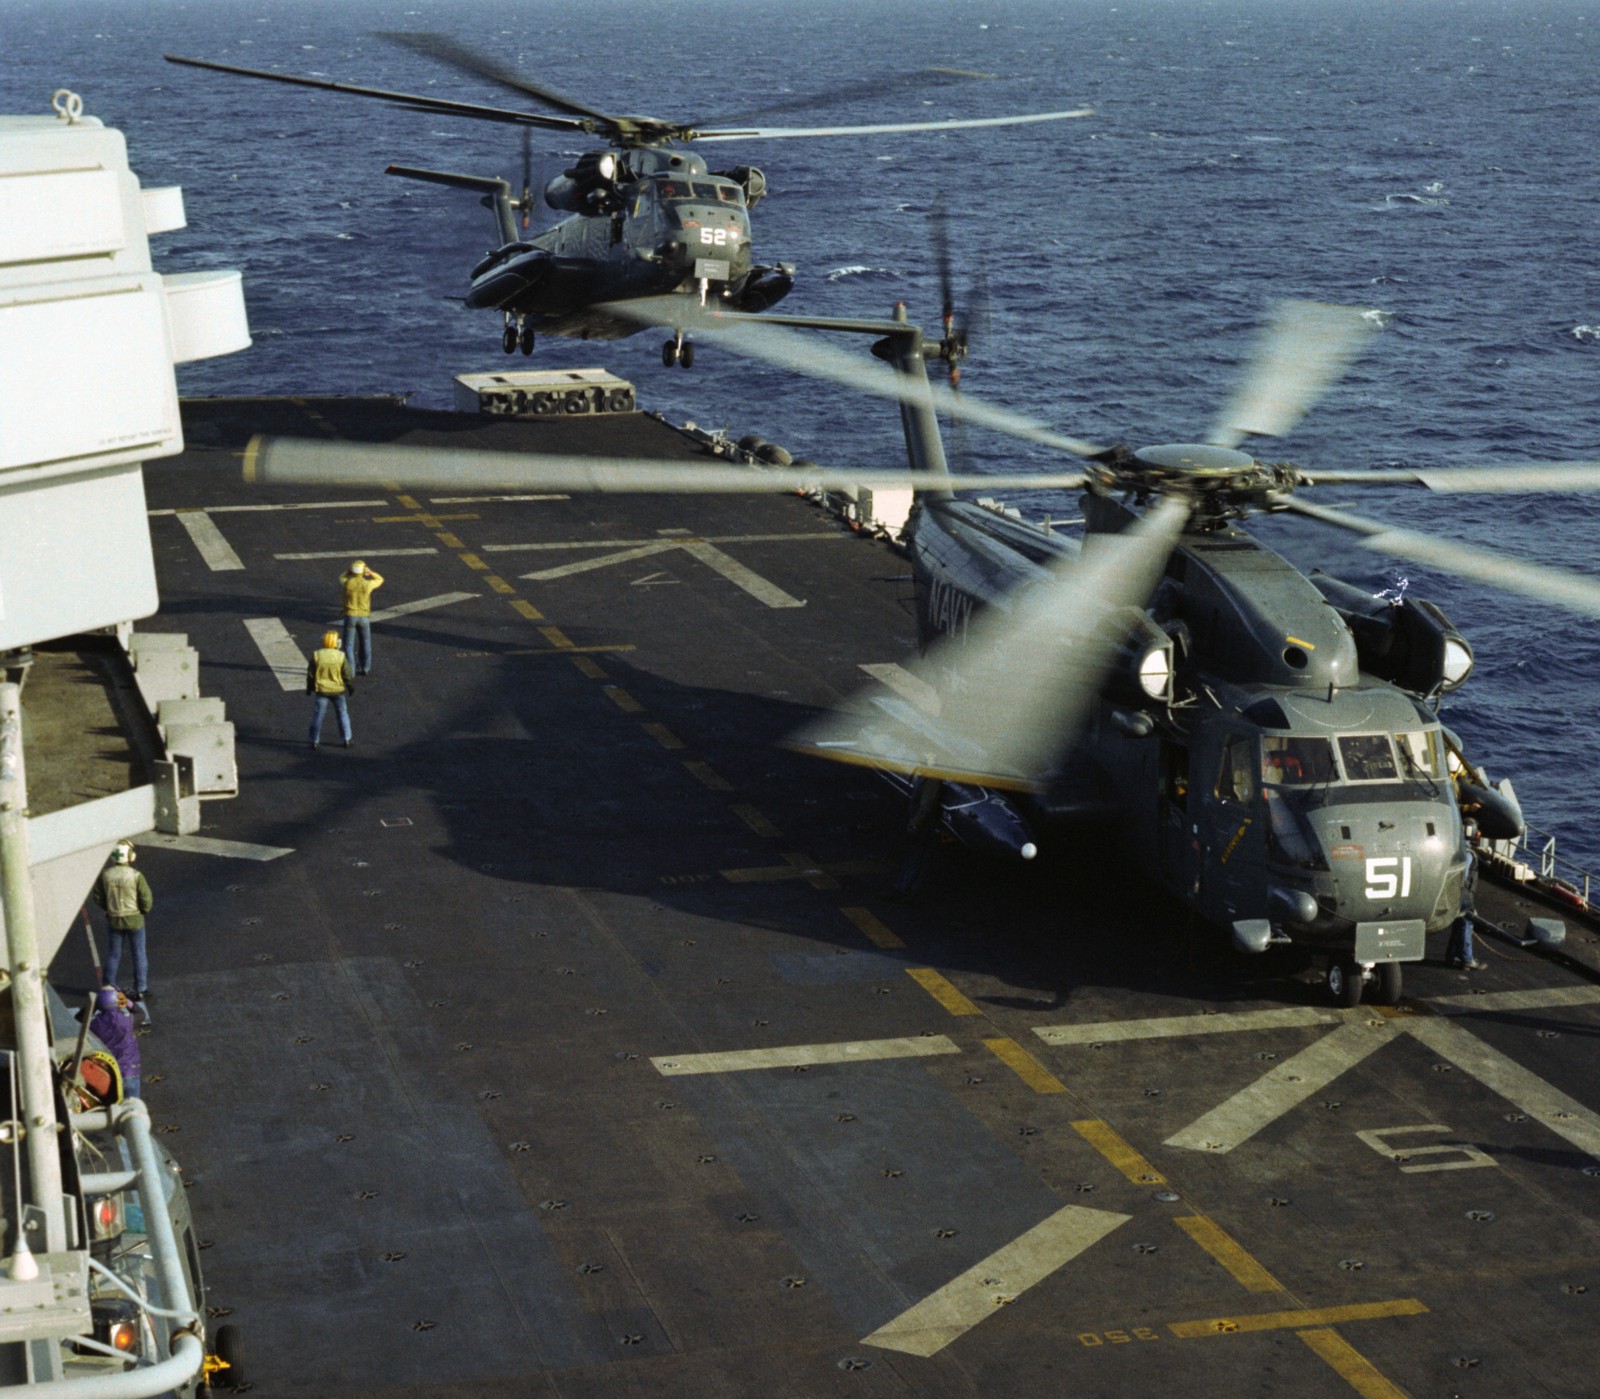 lph-9 uss guam iwo jima class amphibious assault ship landing platform helicopter us navy 15